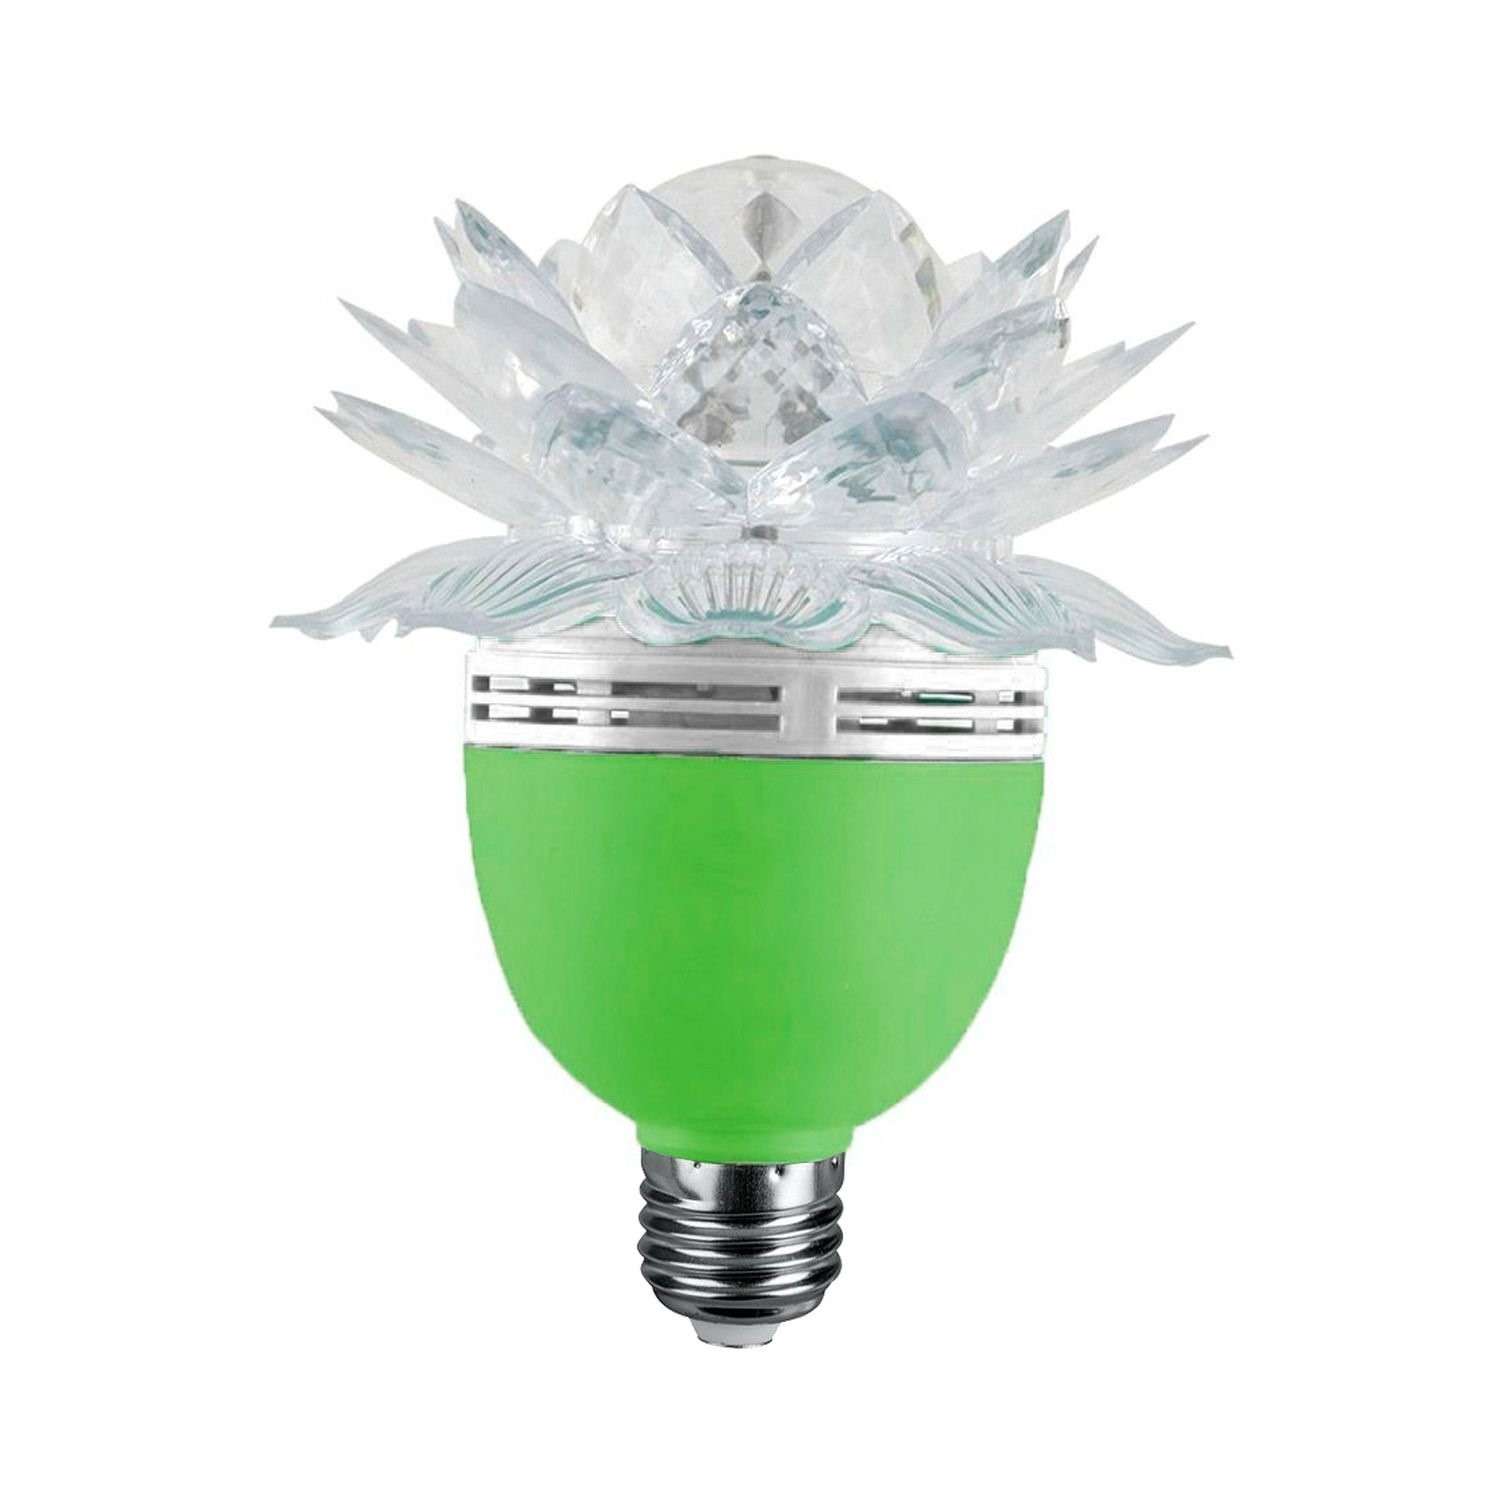 Светильник Uniglodis Цветок зеленый - фото 2